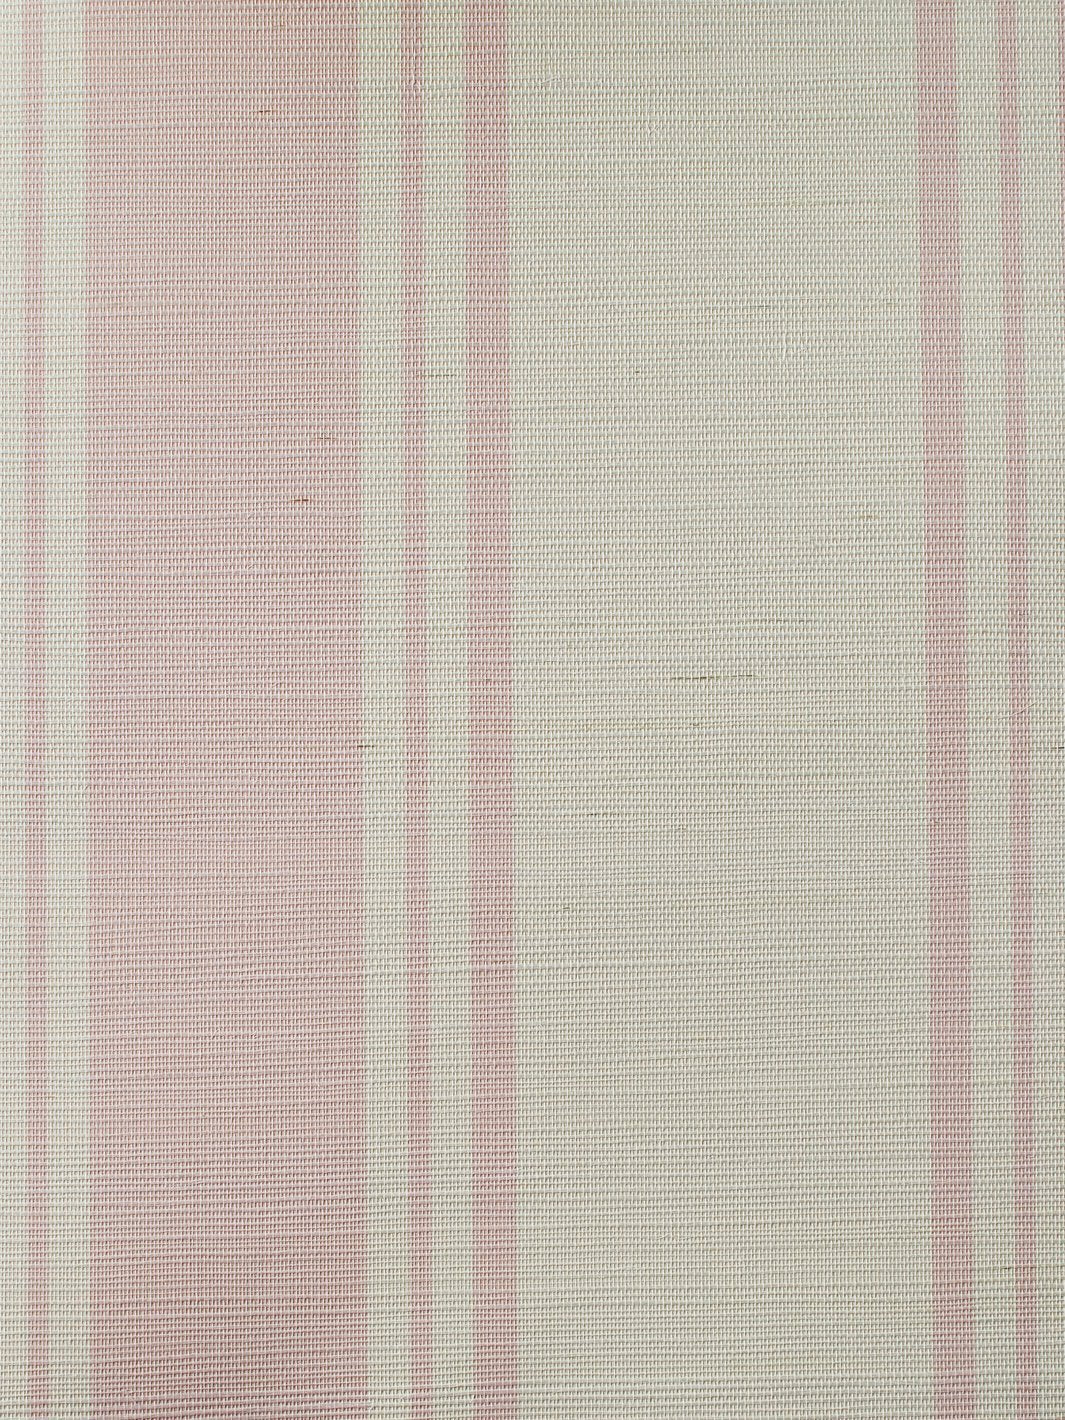 'Yorkshire Stripe' Grasscloth' Wallpaper by Wallshoppe - Ballet Slipper